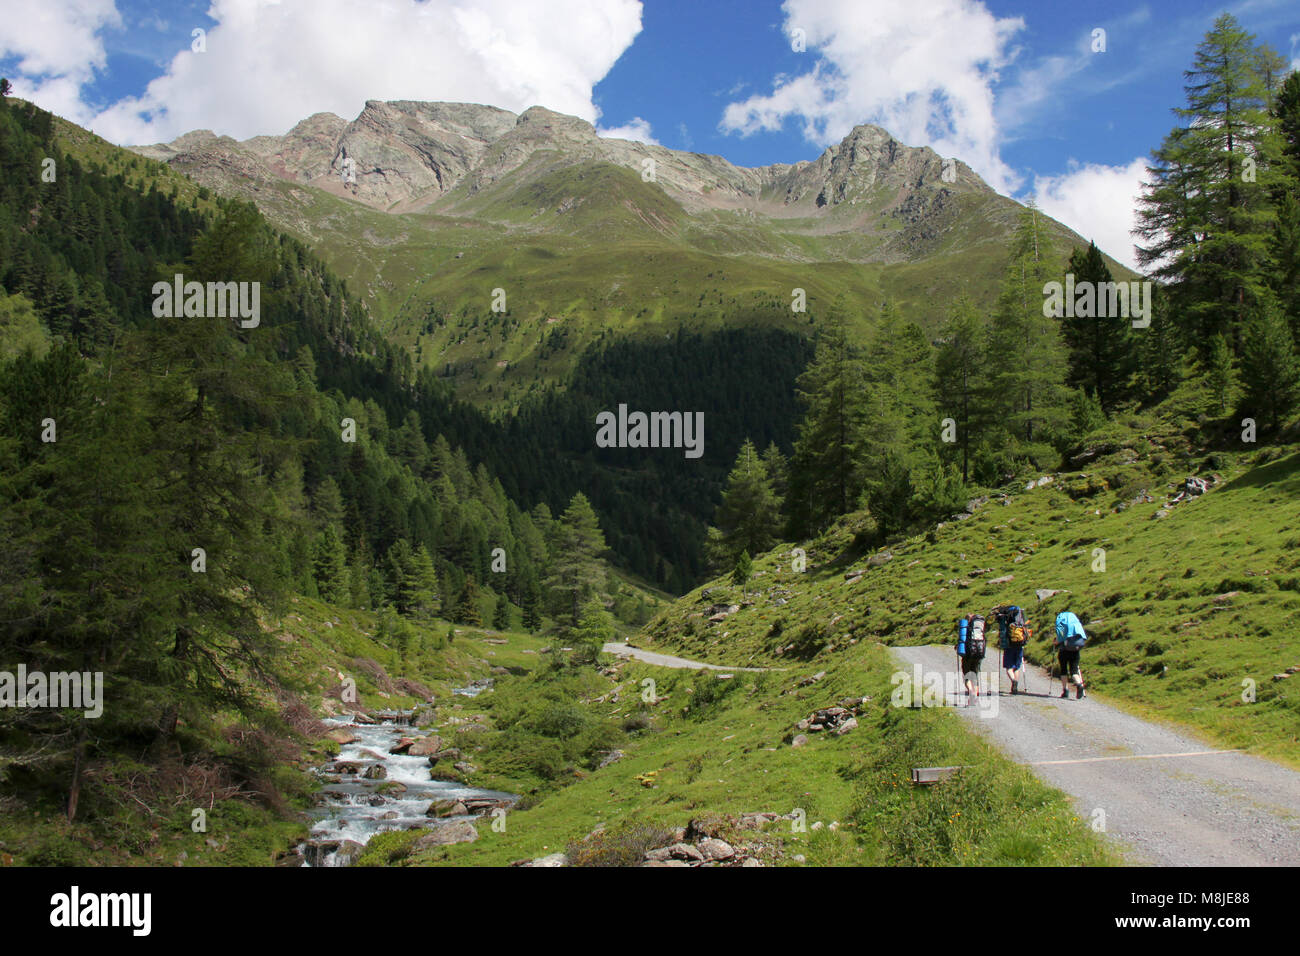 Les alpinistes en Alpes de Stubai, Autriche Banque D'Images